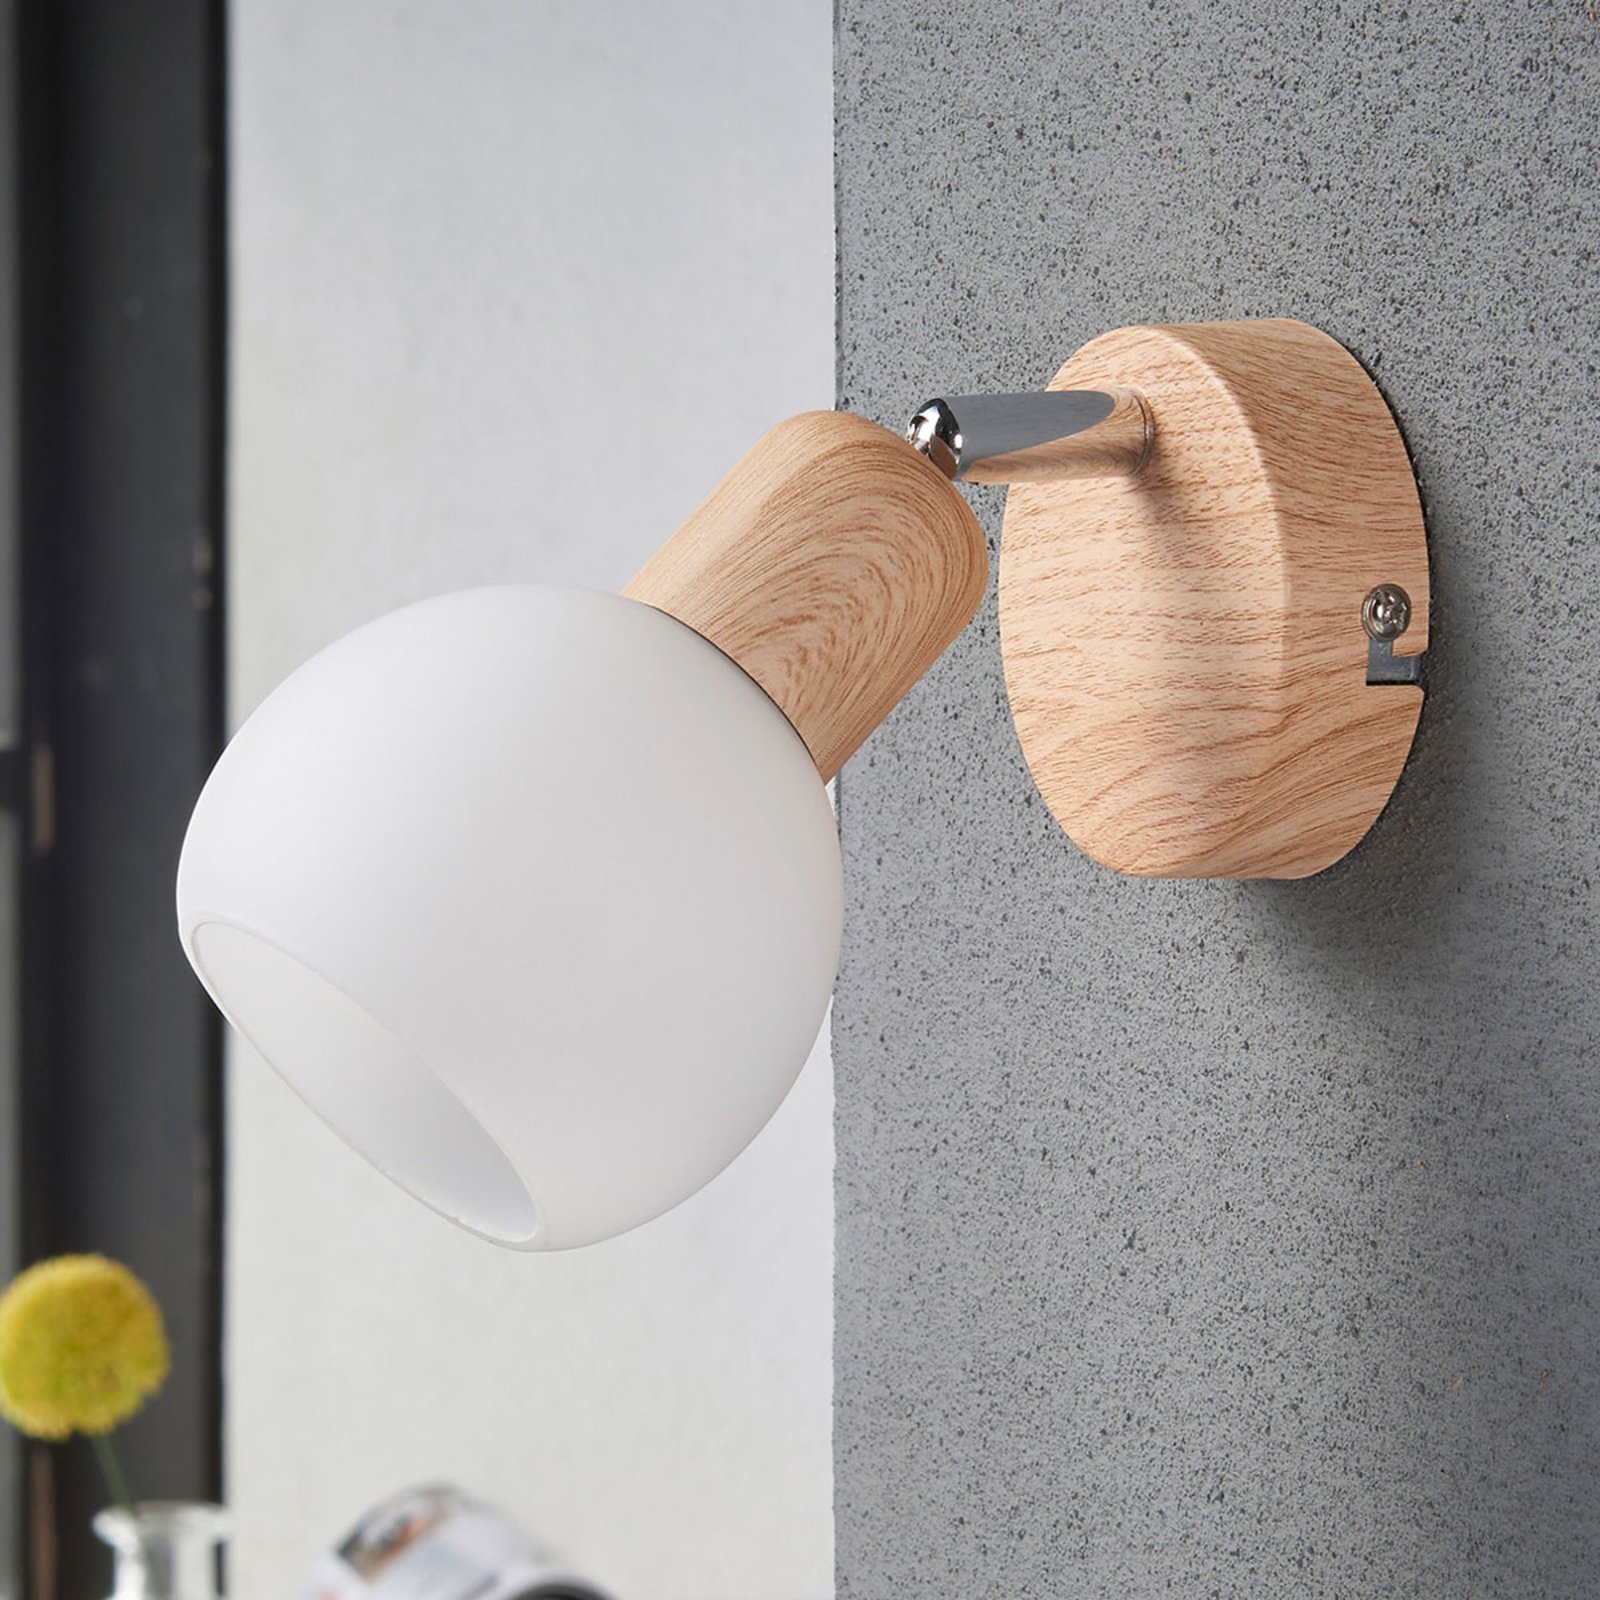 Svenka spotlight, one-bulb wood look